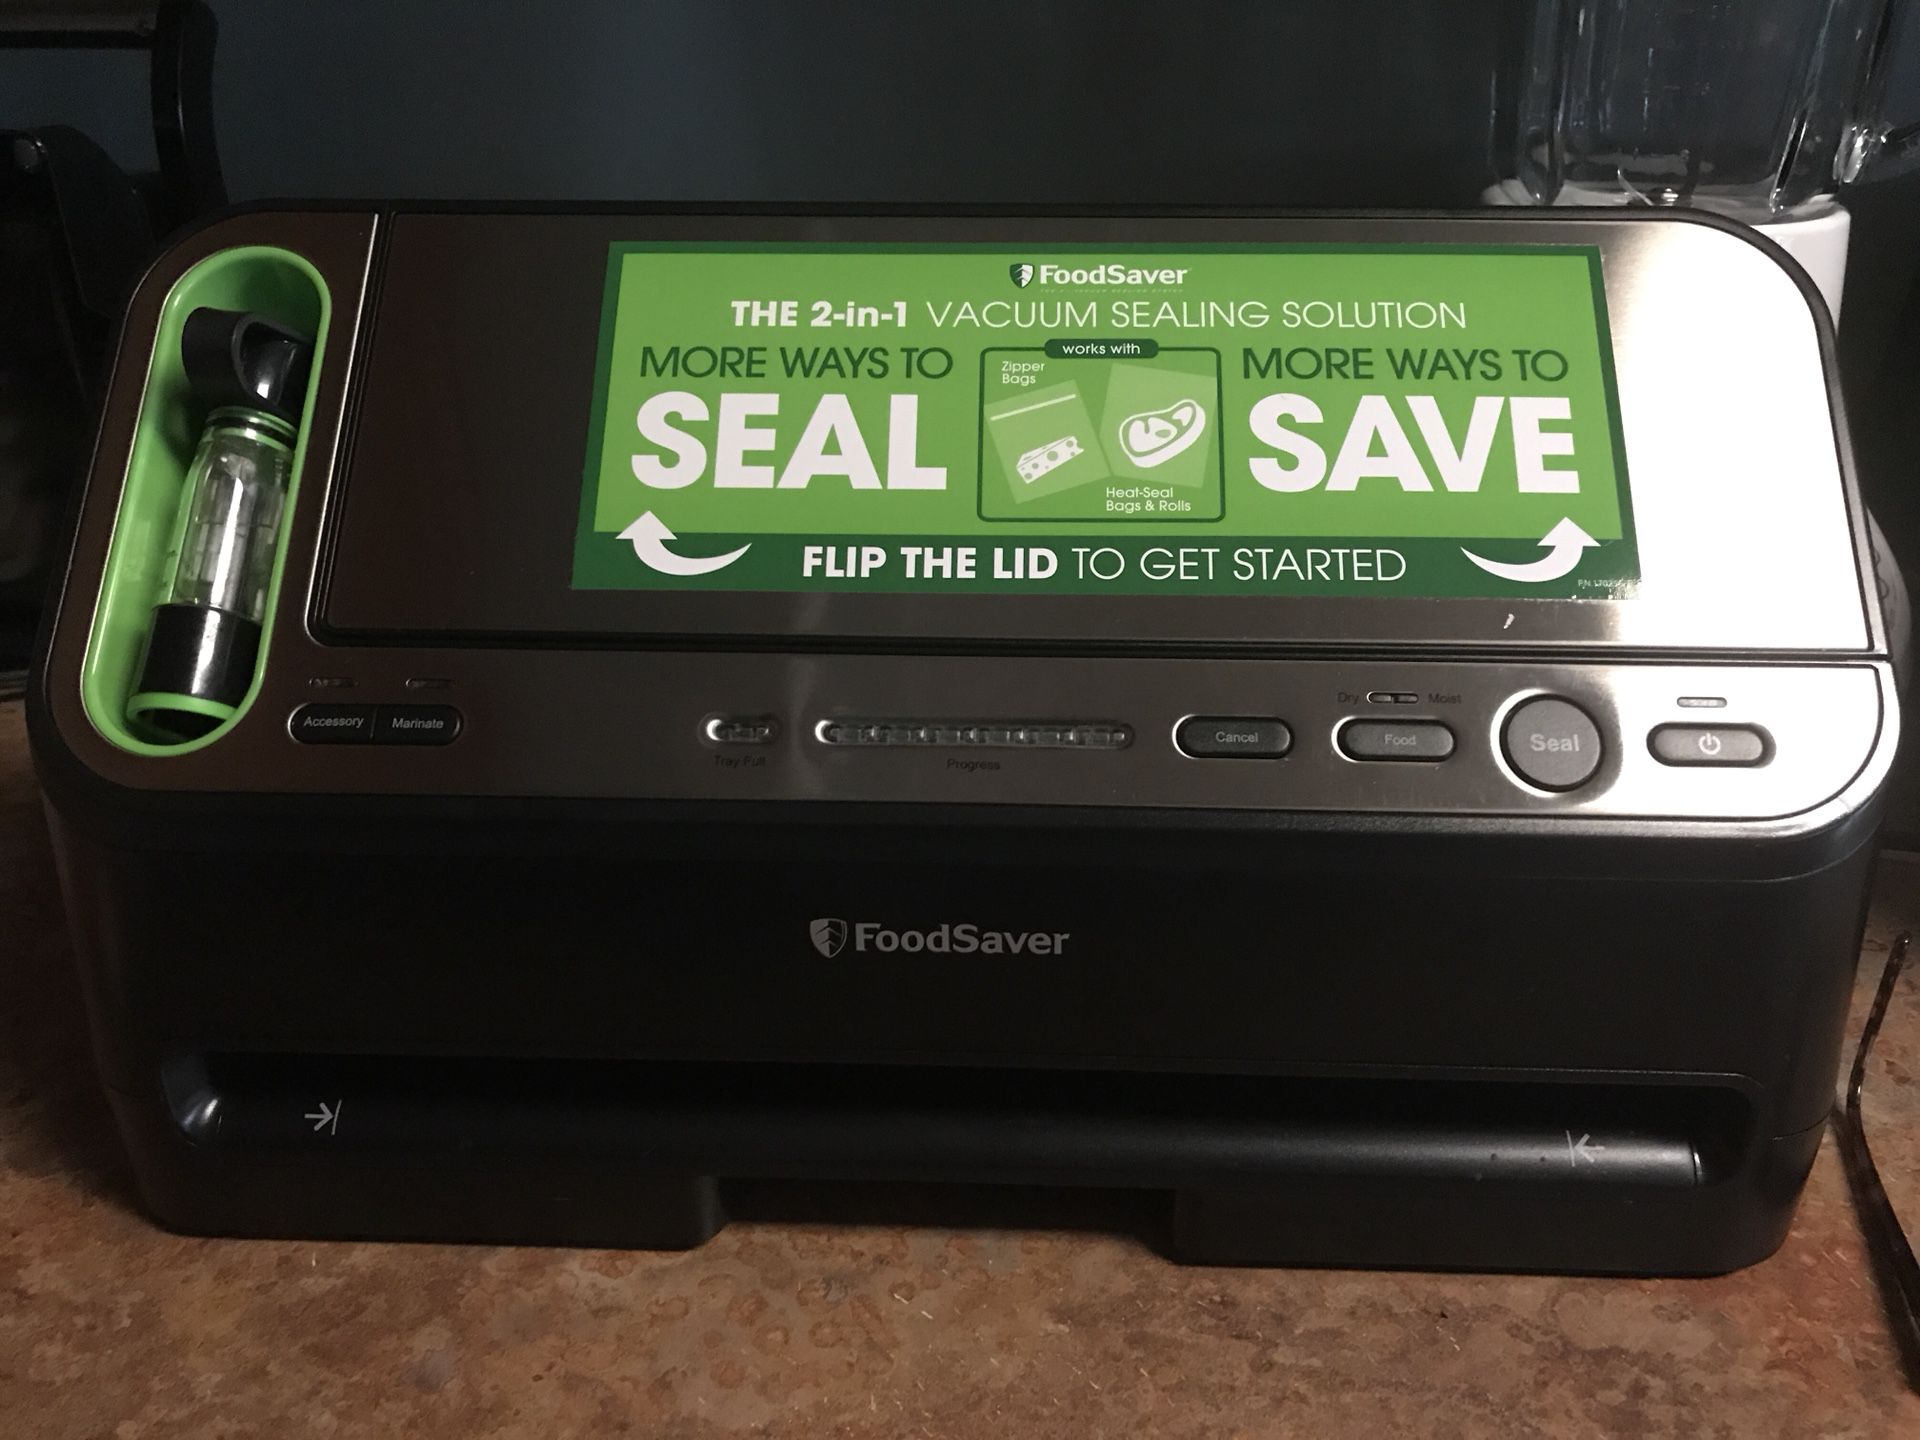 Food Saver 2-1 vacuum sealer